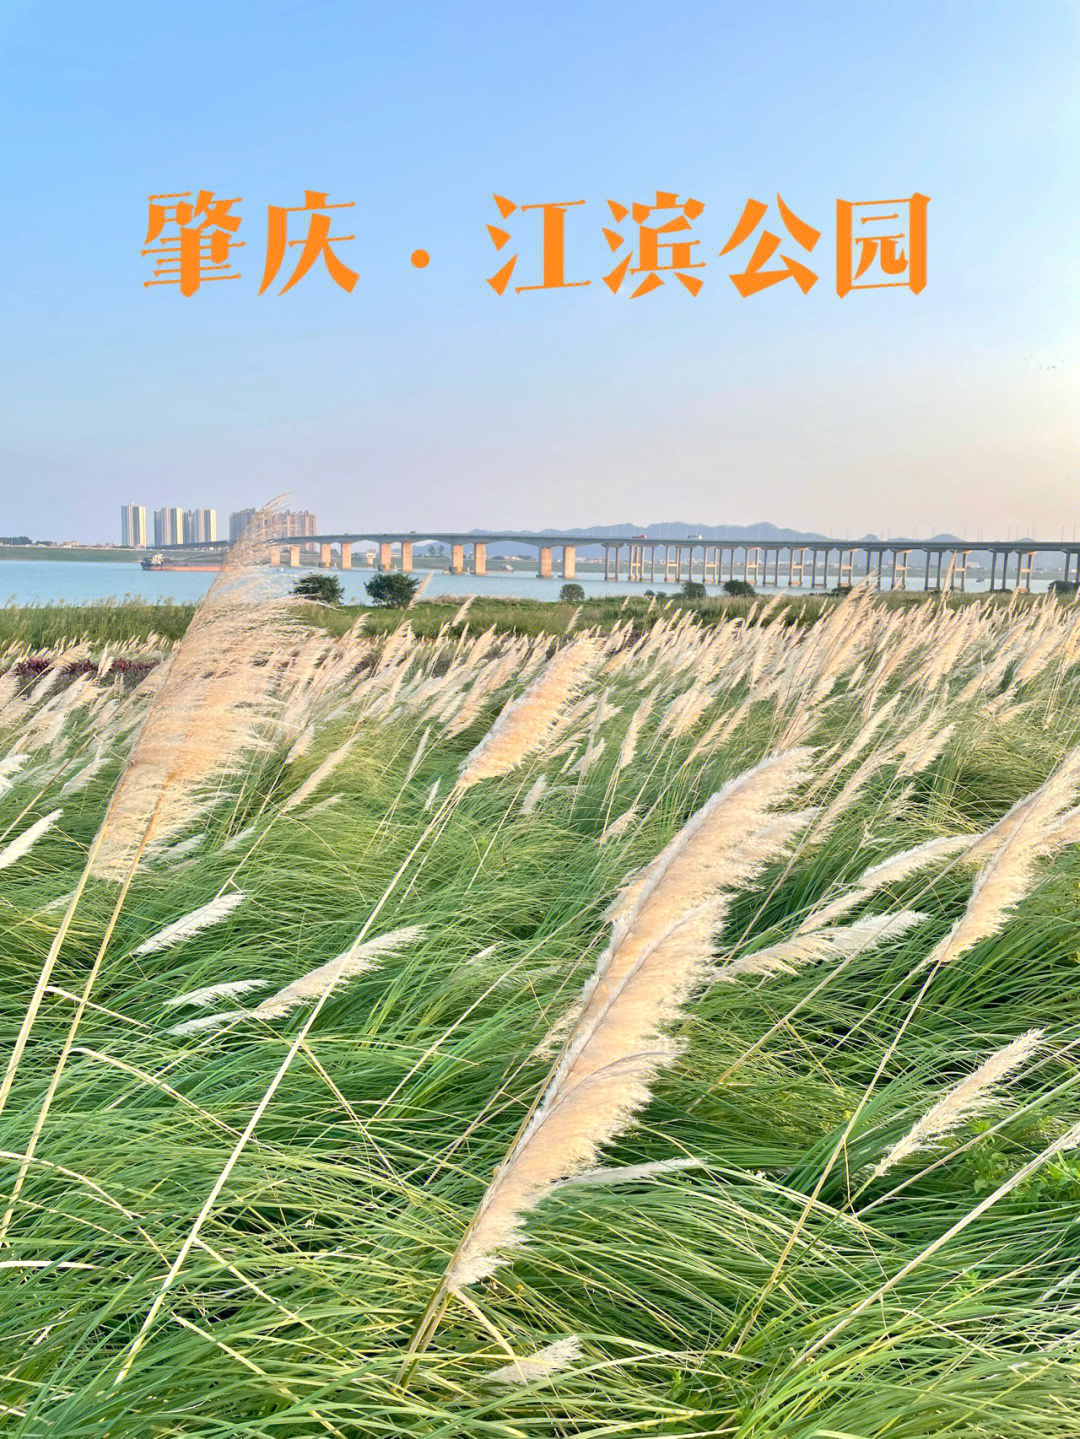 这周末去了肇庆的滨江公园,绵延好几公里的江滩上种满了各种花草芦苇